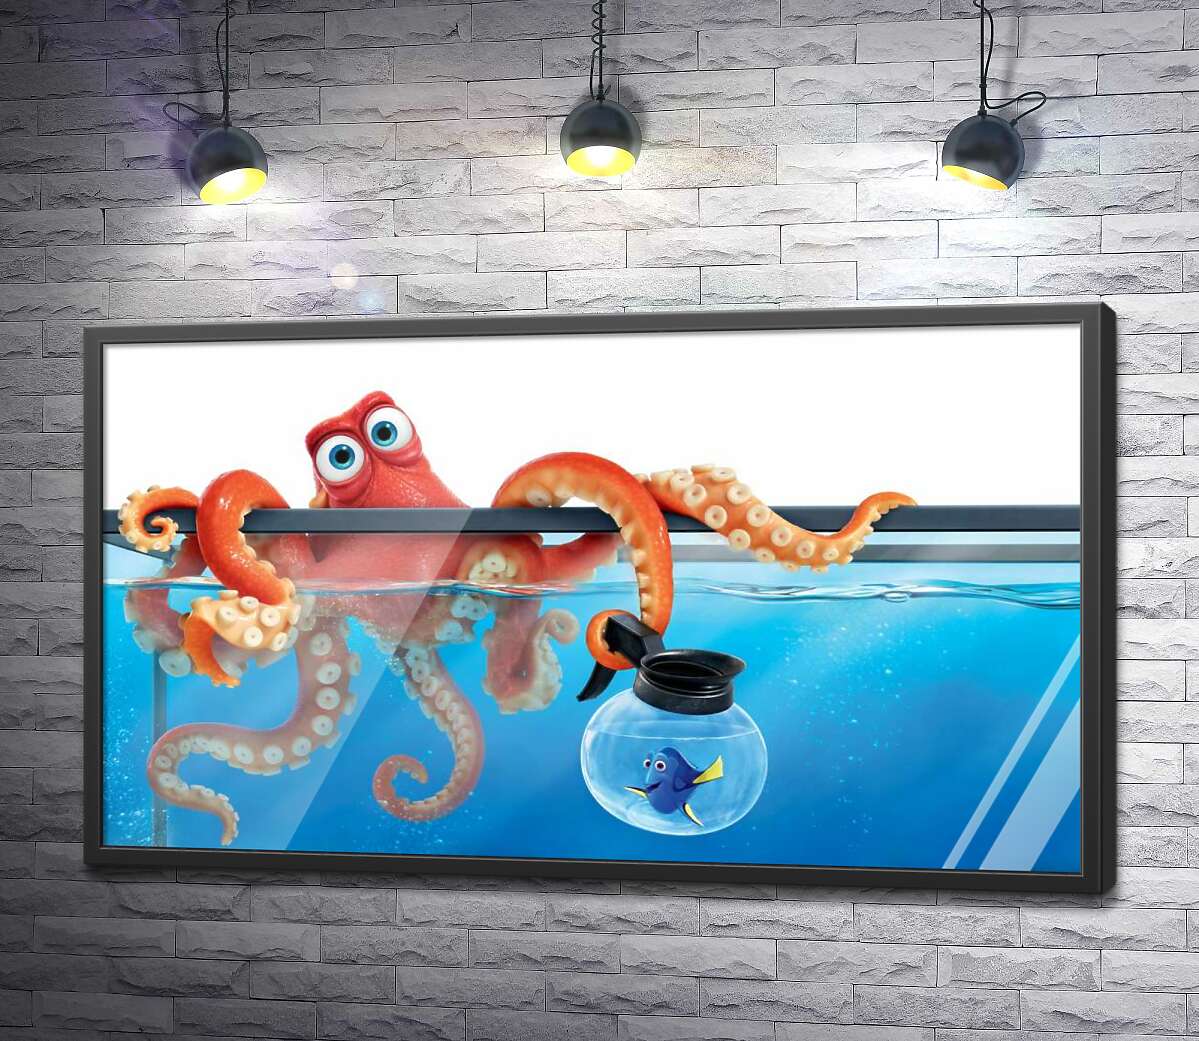 постер Герои мультфильма "В поисках Дори" (Finding Dory) осьминог Хэнк и рыба Дори в аквариумах